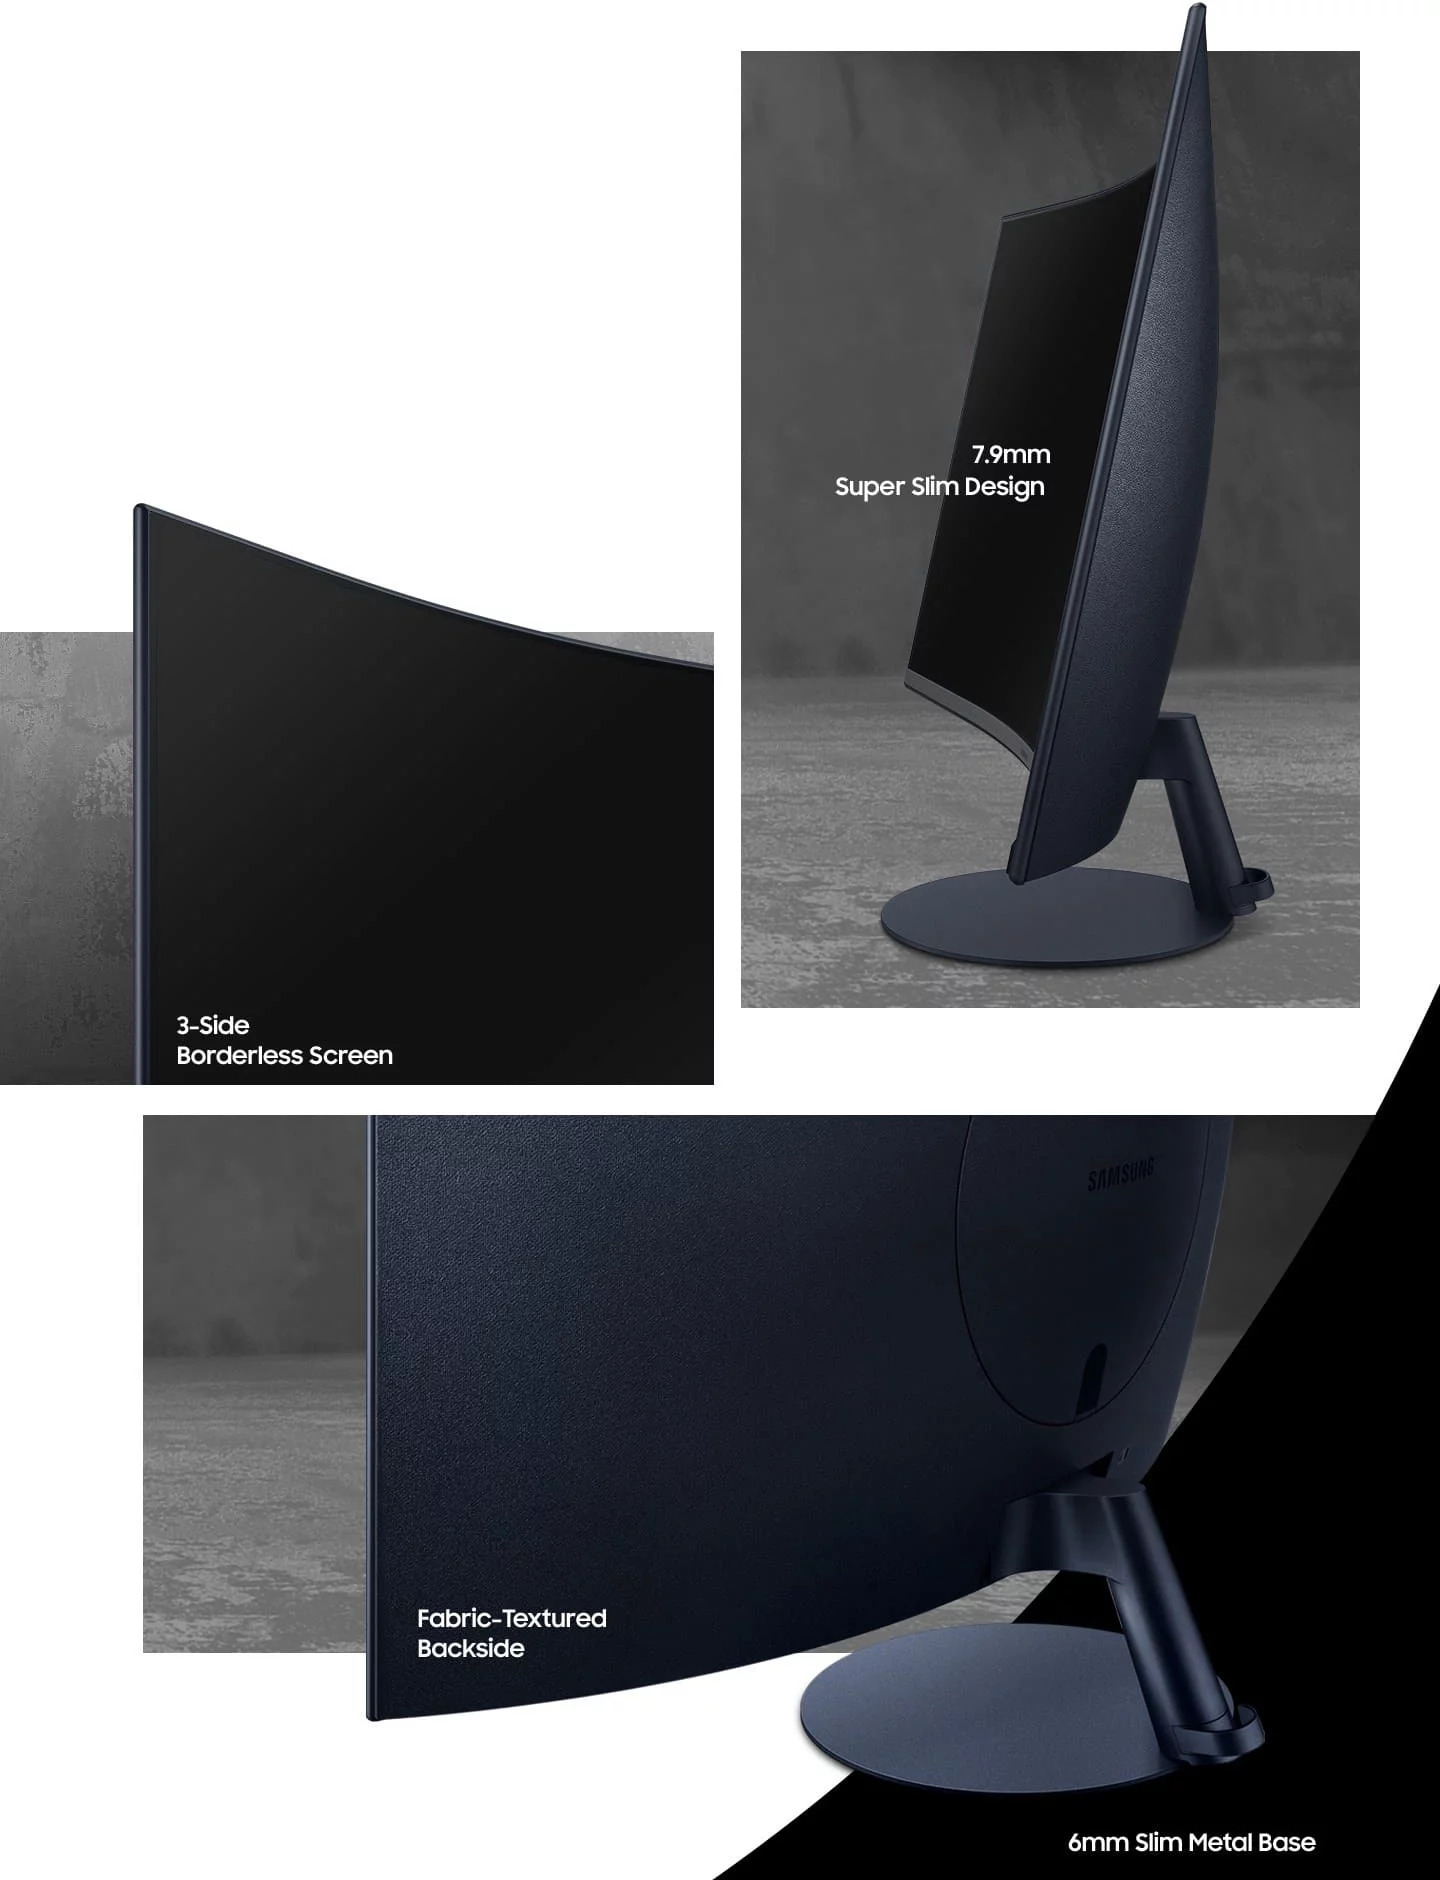 Samsung hiện tại đang chế tạo màn hình siêu cong dành cho văn phòng và game thủ